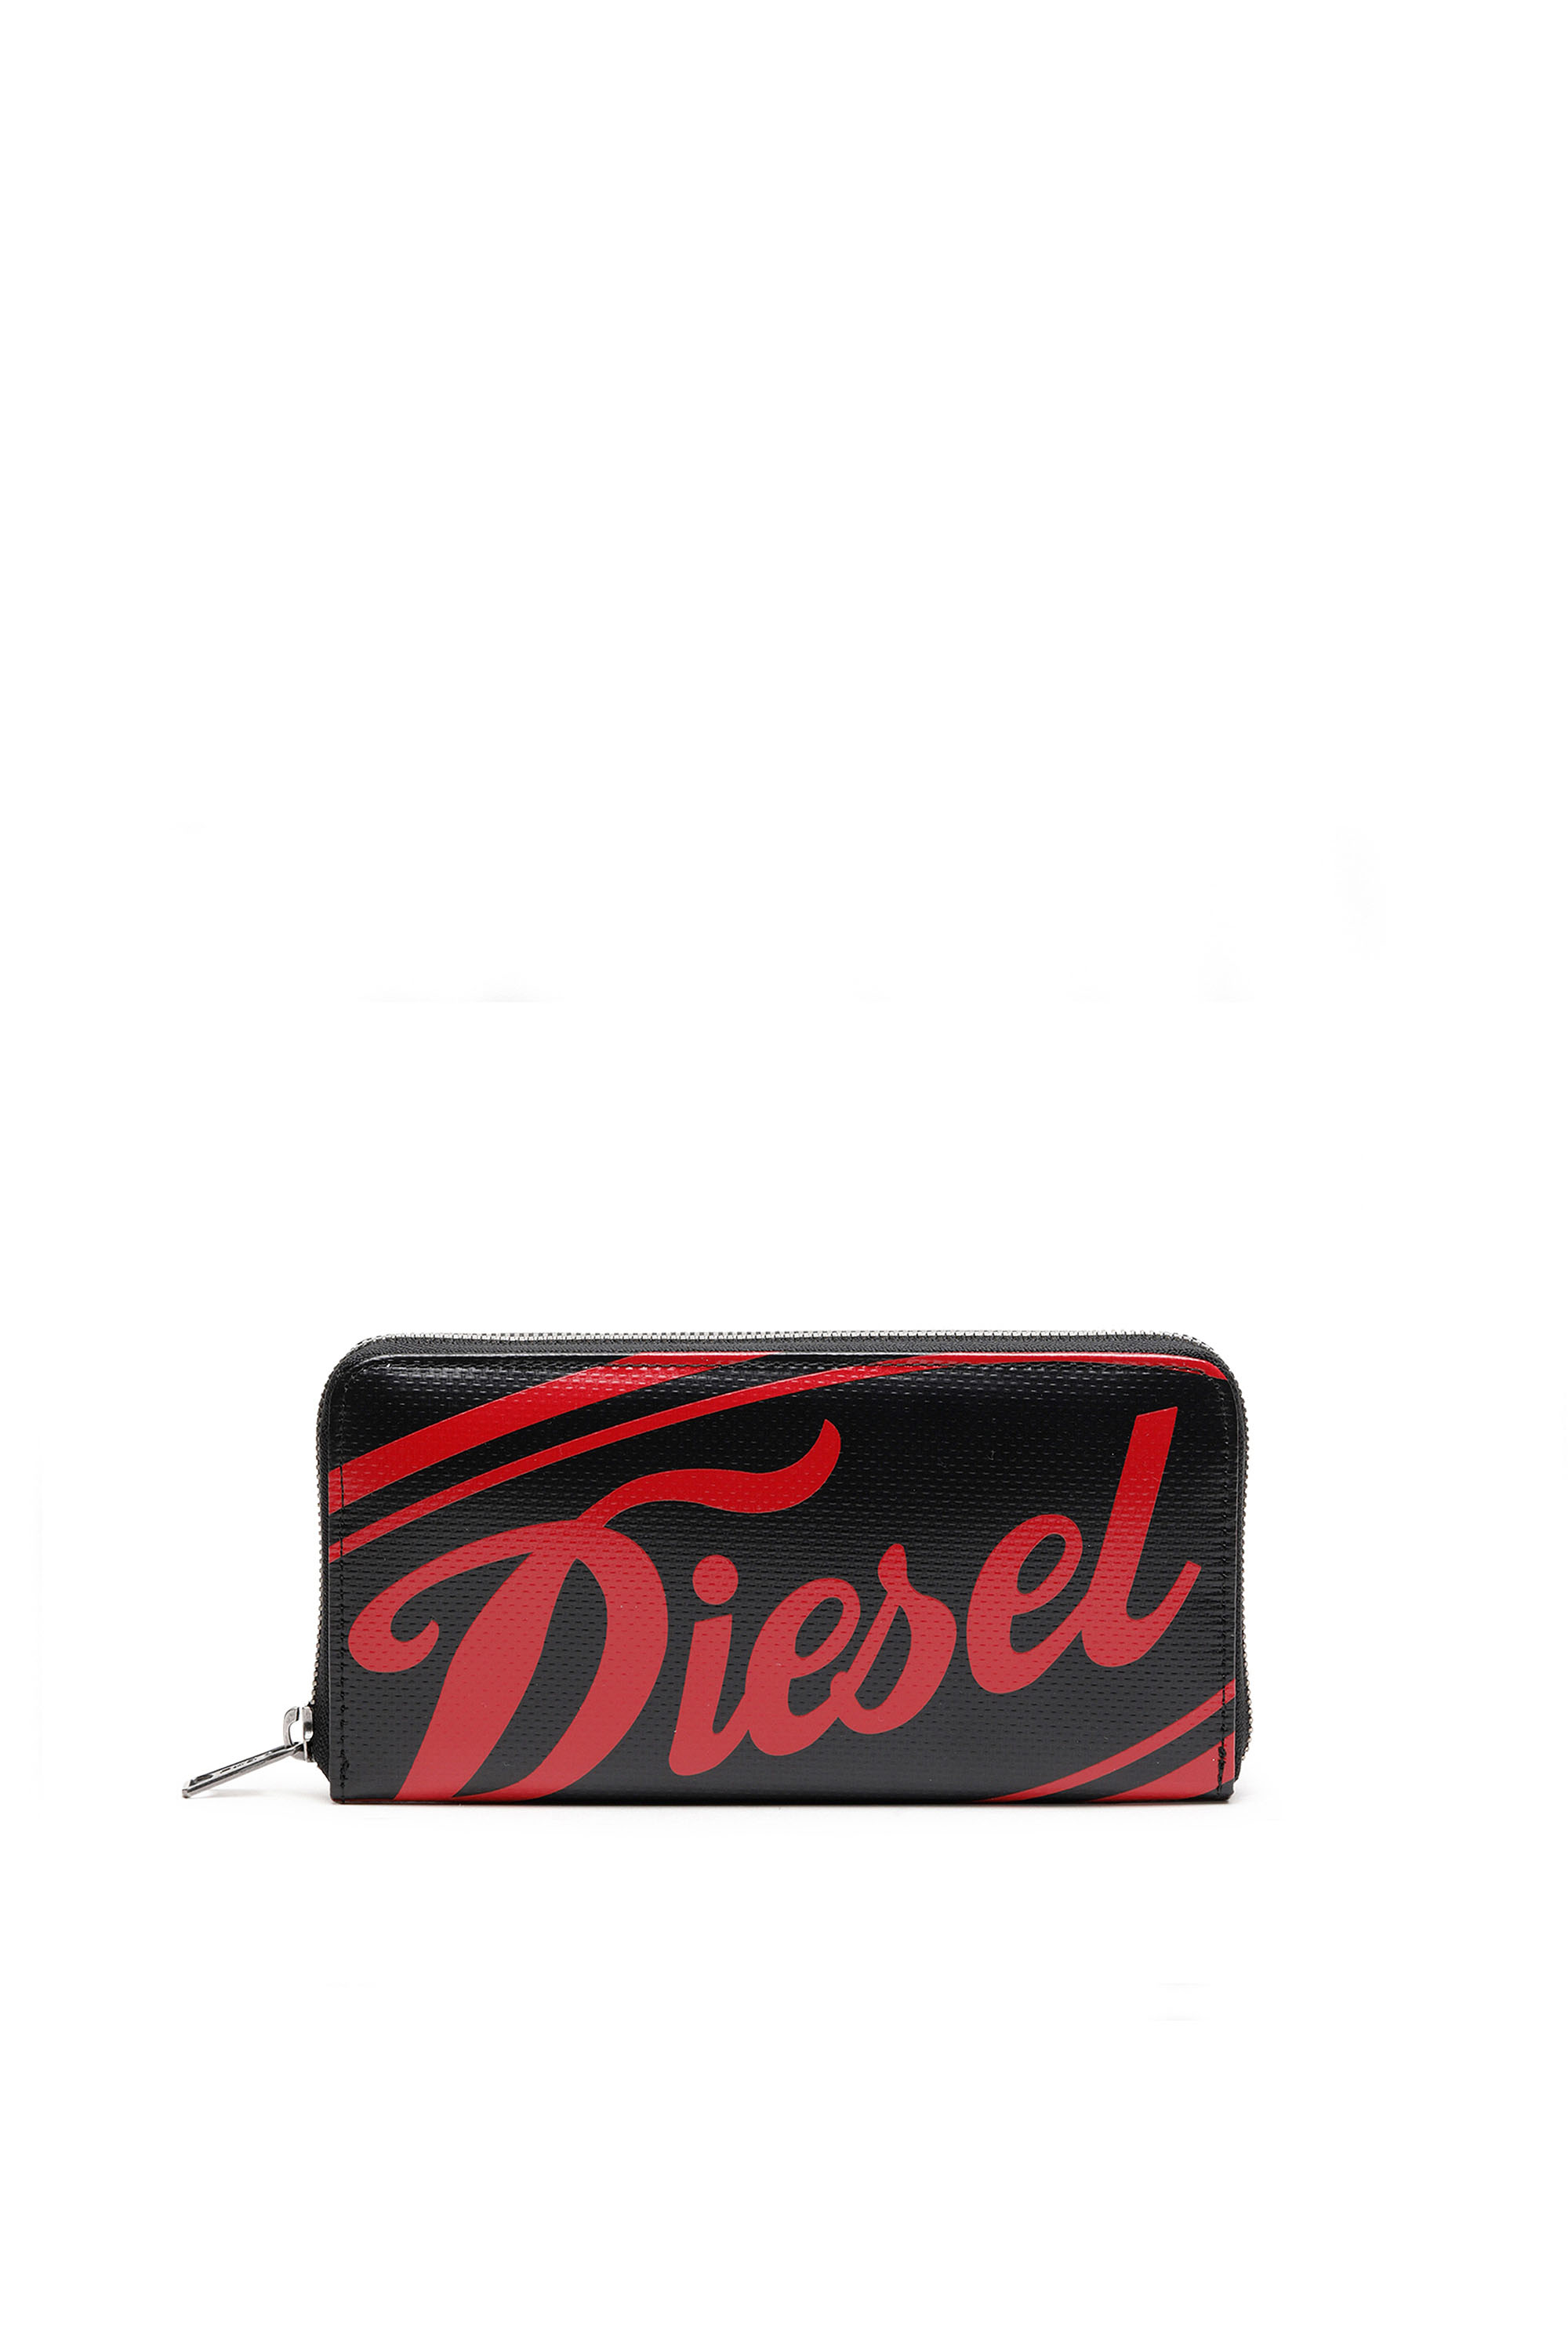 Diesel - 24 ZIP, Black/Red - Image 1